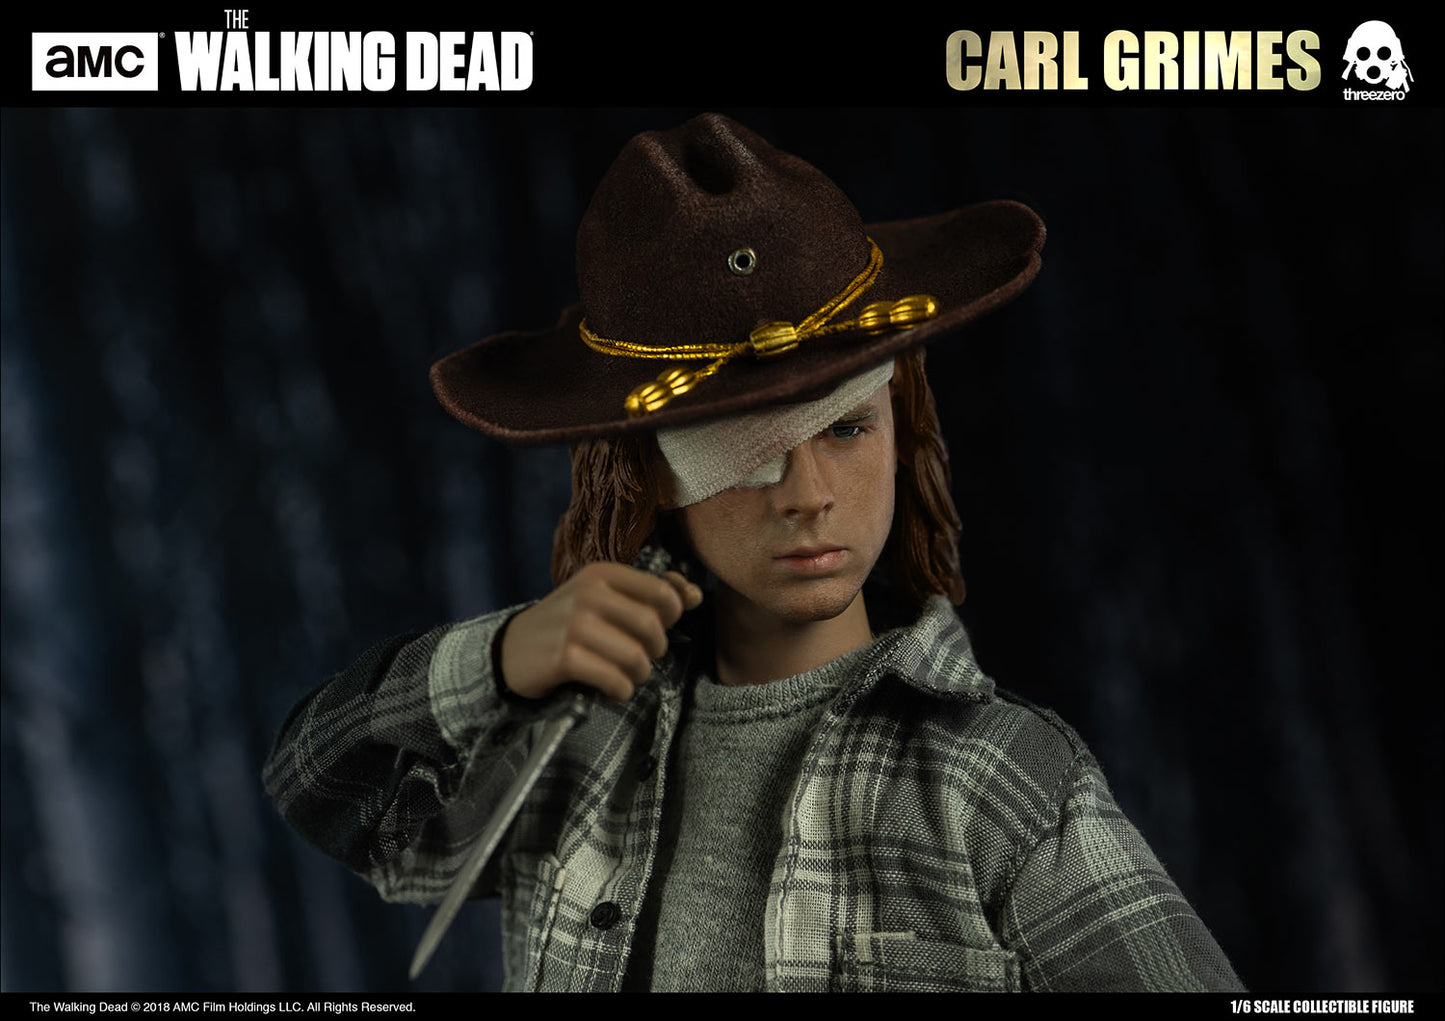 Pedido Figura Carl Grimes (Deluxe Version) - The Walking Dead marca Threezero 3Z0062DV escala 1/6